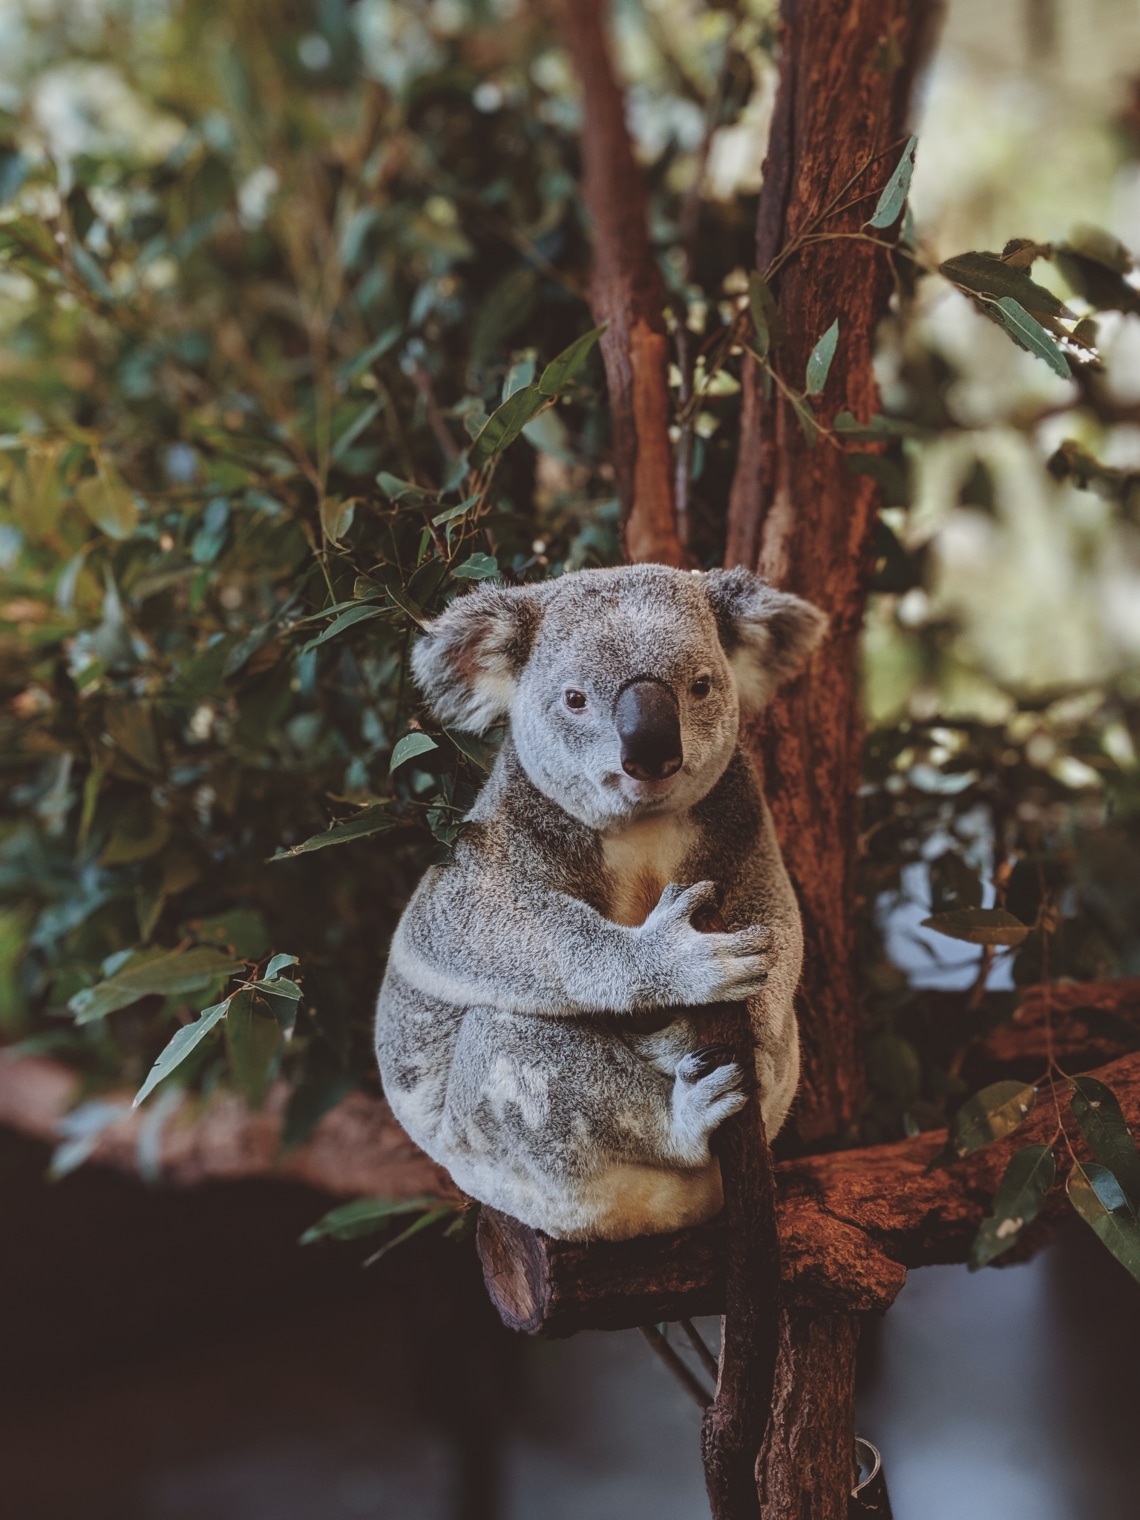 A koala ujjlenyomata majdnem olyan, mint az emberé